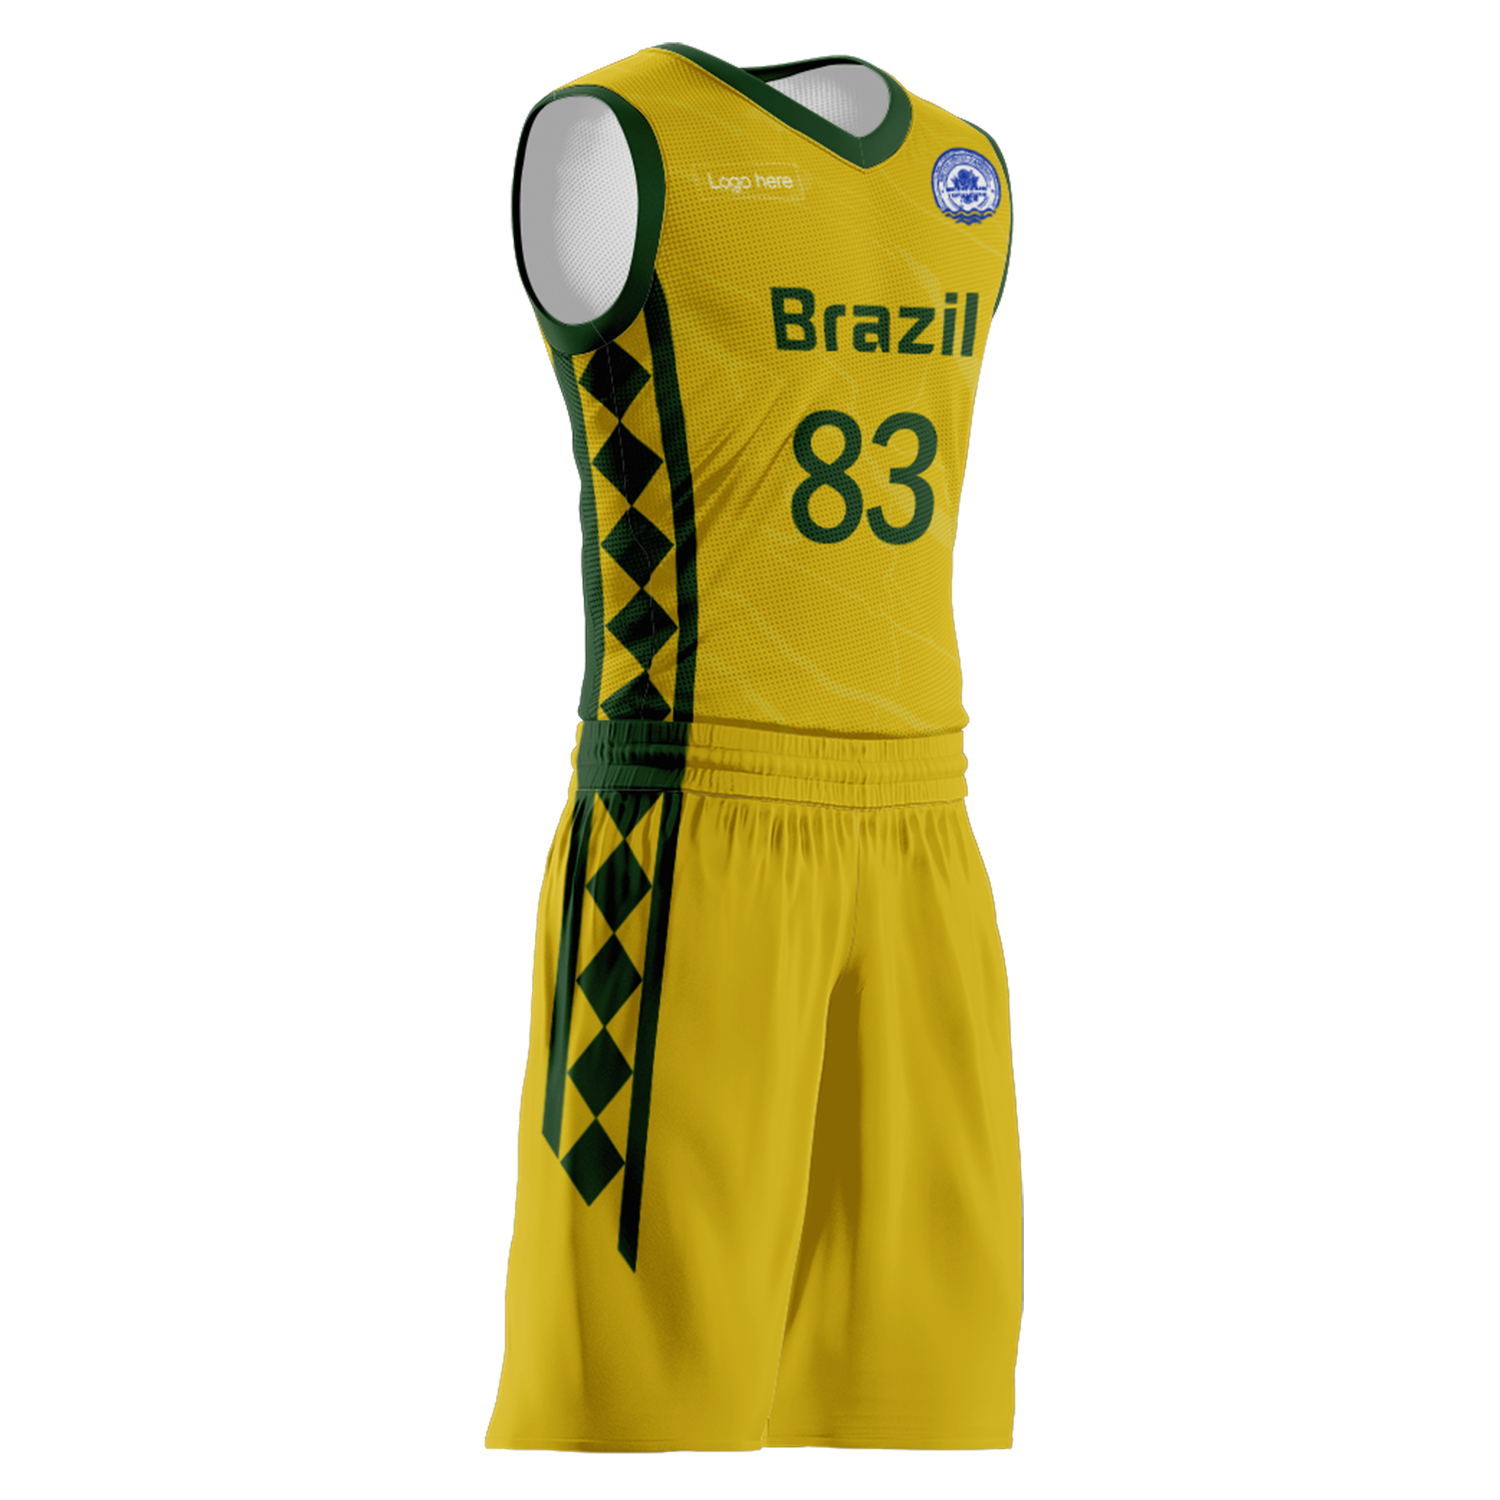 Trajes de baloncesto del equipo de Brasil personalizados